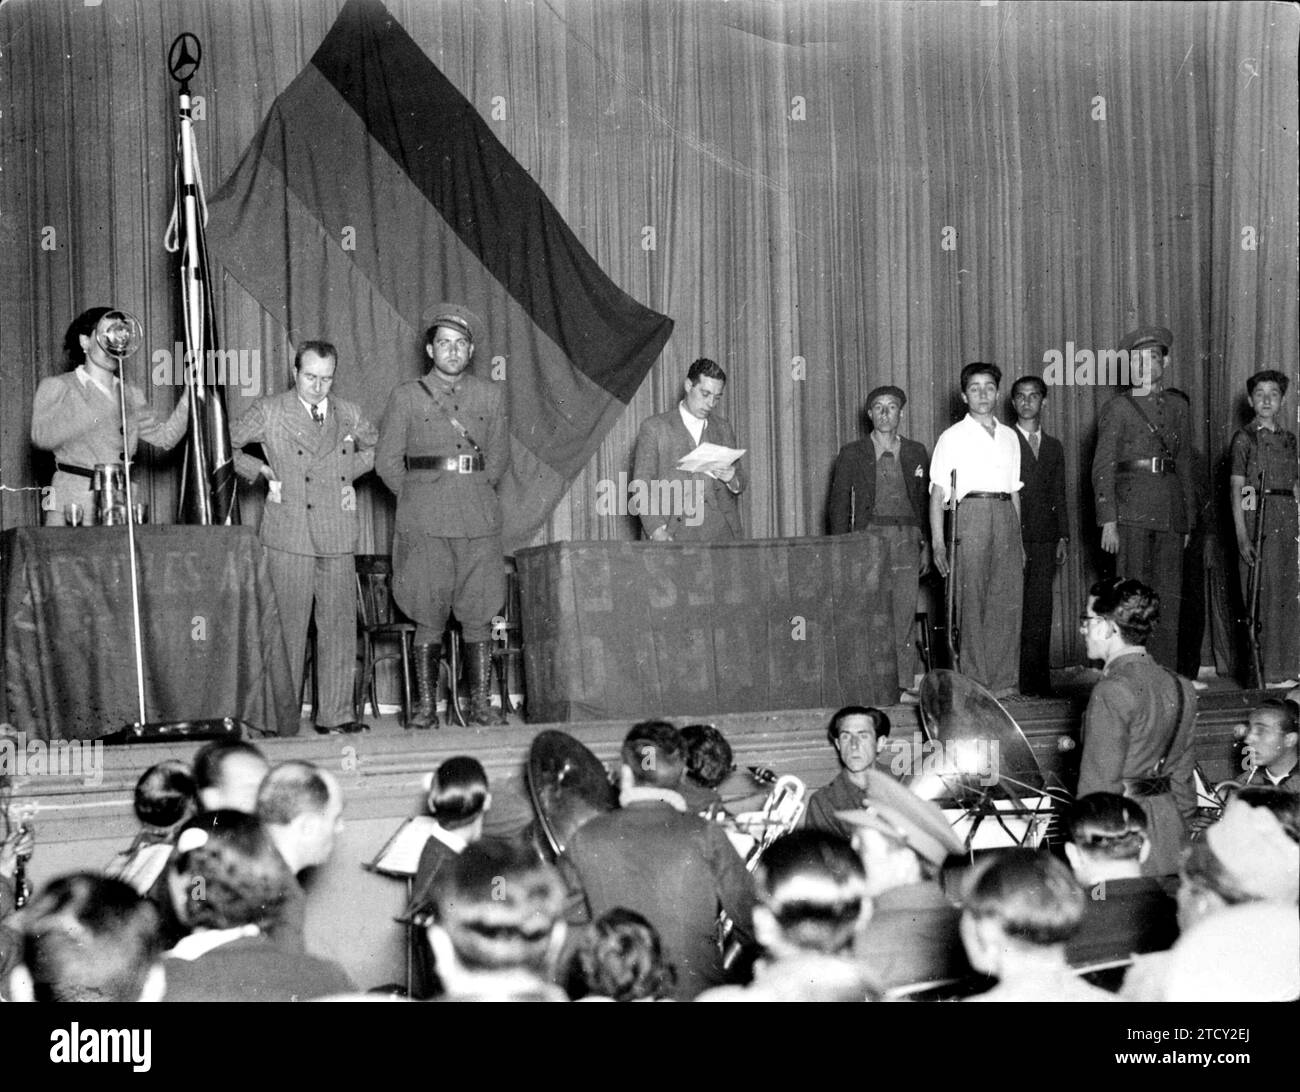 04/05/1938. Tribut von der Volksfront Madrids an die Neuen Freiwilligen Divisionen, bei denen sie mit einer republikanischen Flagge versehen wurden. Quelle: Album/Archivo ABC Stockfoto